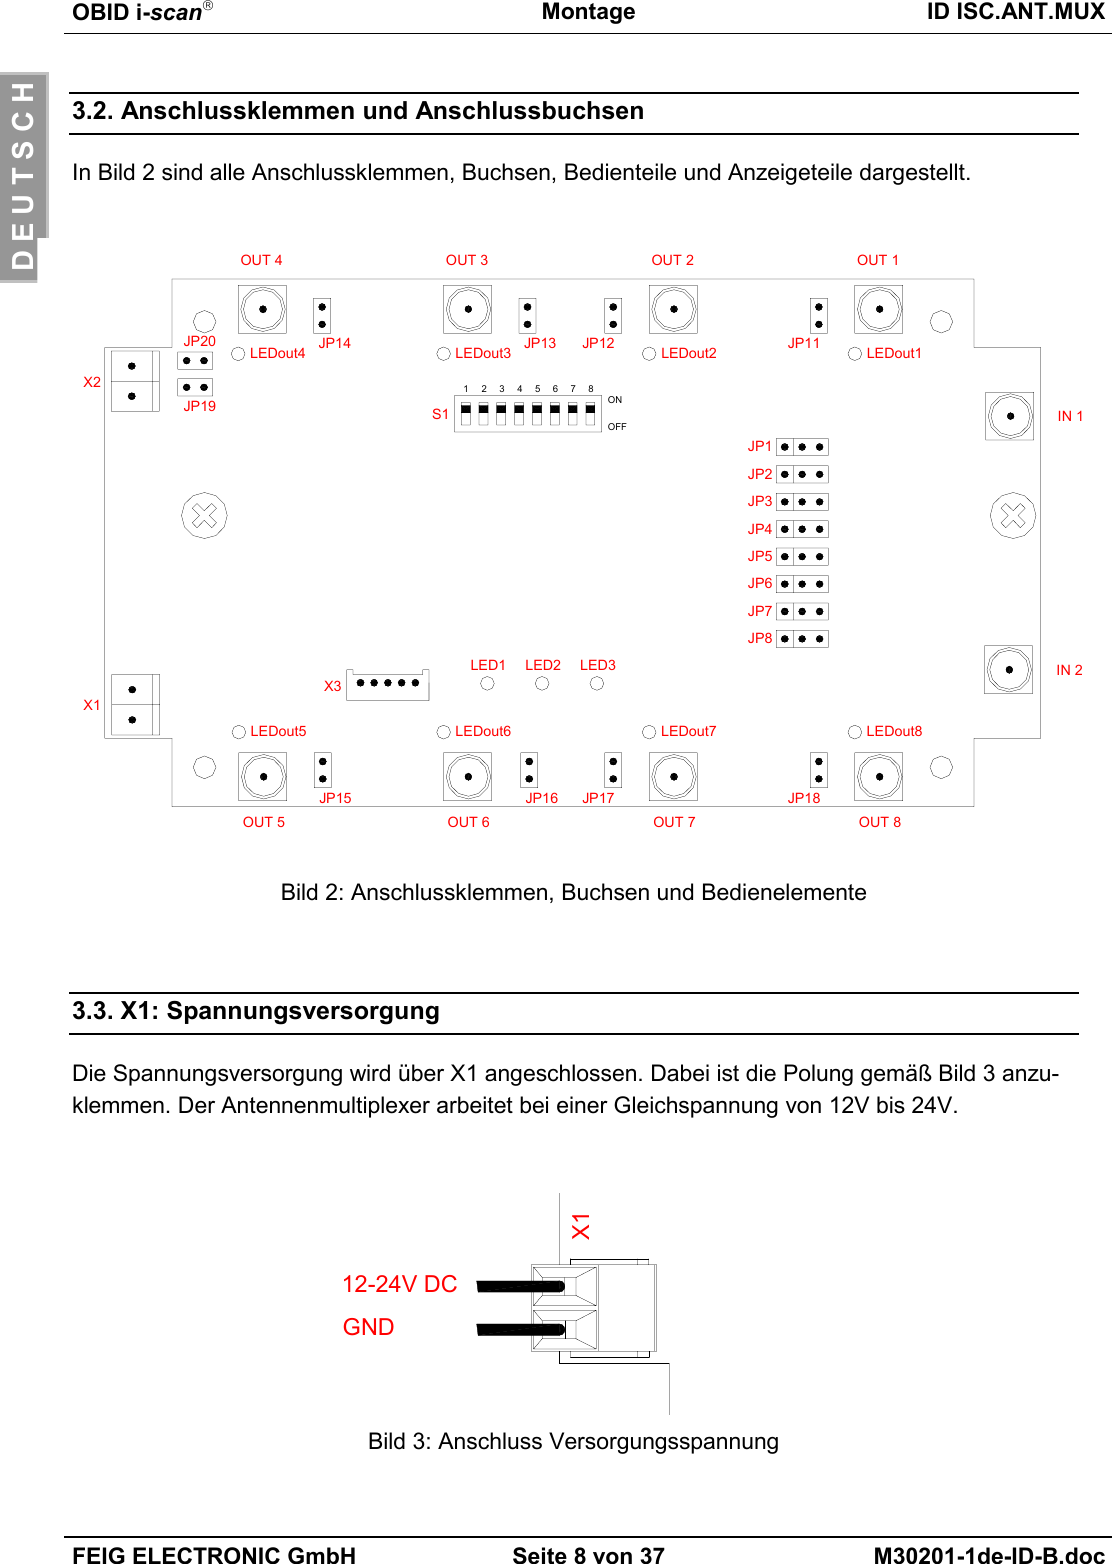 OBID i-scanMontage ID ISC.ANT.MUXFEIG ELECTRONIC GmbH Seite 8 von 37 M30201-1de-ID-B.docD E U T S C H3.2. Anschlussklemmen und AnschlussbuchsenIn Bild 2 sind alle Anschlussklemmen, Buchsen, Bedienteile und Anzeigeteile dargestellt.Bild 2: Anschlussklemmen, Buchsen und Bedienelemente3.3. X1: SpannungsversorgungDie Spannungsversorgung wird über X1 angeschlossen. Dabei ist die Polung gemäß Bild 3 anzu-klemmen. Der Antennenmultiplexer arbeitet bei einer Gleichspannung von 12V bis 24V.Bild 3: Anschluss VersorgungsspannungX112-24V DCGNDJP15 JP16 JP17 JP18JP14 JP13 JP12 JP1112345678ONOFF IN 1IN 2OUT 1OUT 2OUT 3OUT 4OUT 8OUT 7OUT 6OUT 5S1JP1JP2JP3JP4JP5JP6JP7JP8JP20JP19X1X2X3LED1 LED2 LED3LEDout5 LEDout6 LEDout7 LEDout8LEDout1LEDout2LEDout3LEDout4